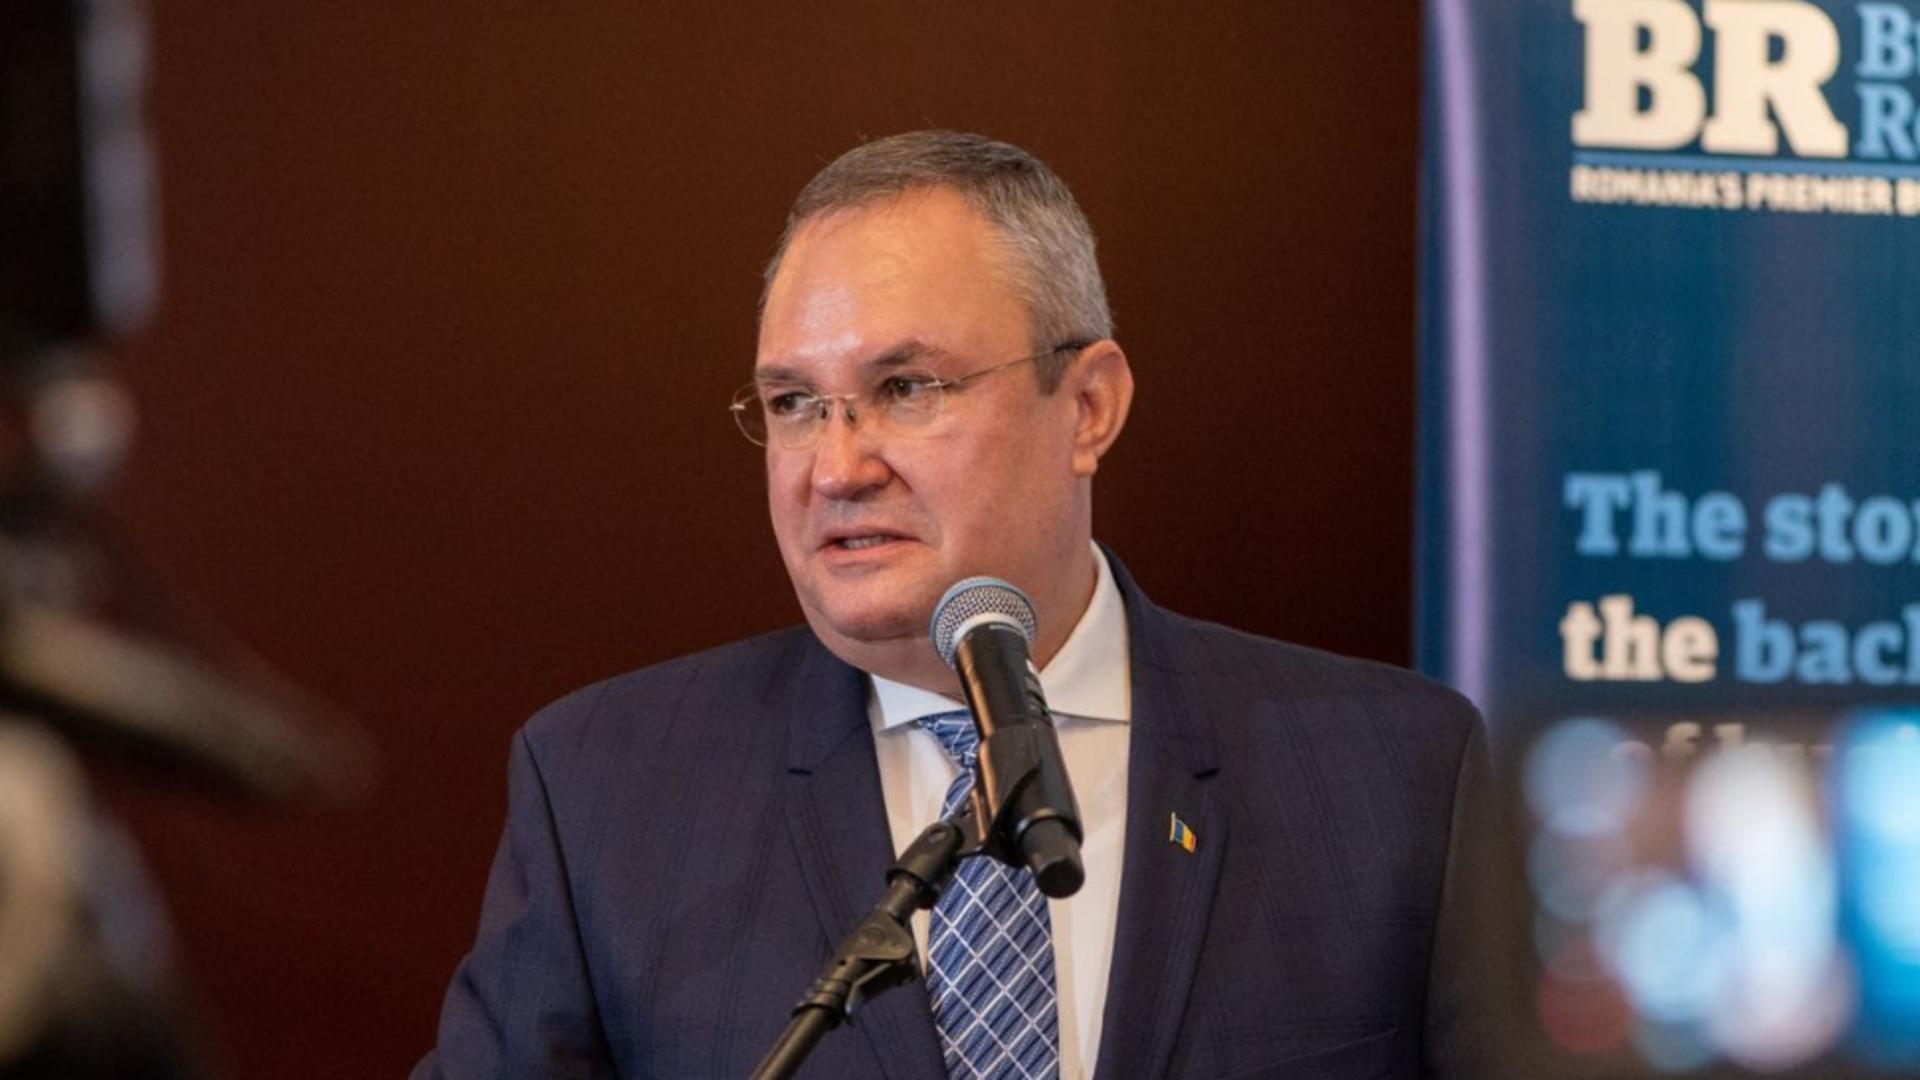 Președintele PNL Nicolae Ciucă a subliniat semnificația politică a evenimentului